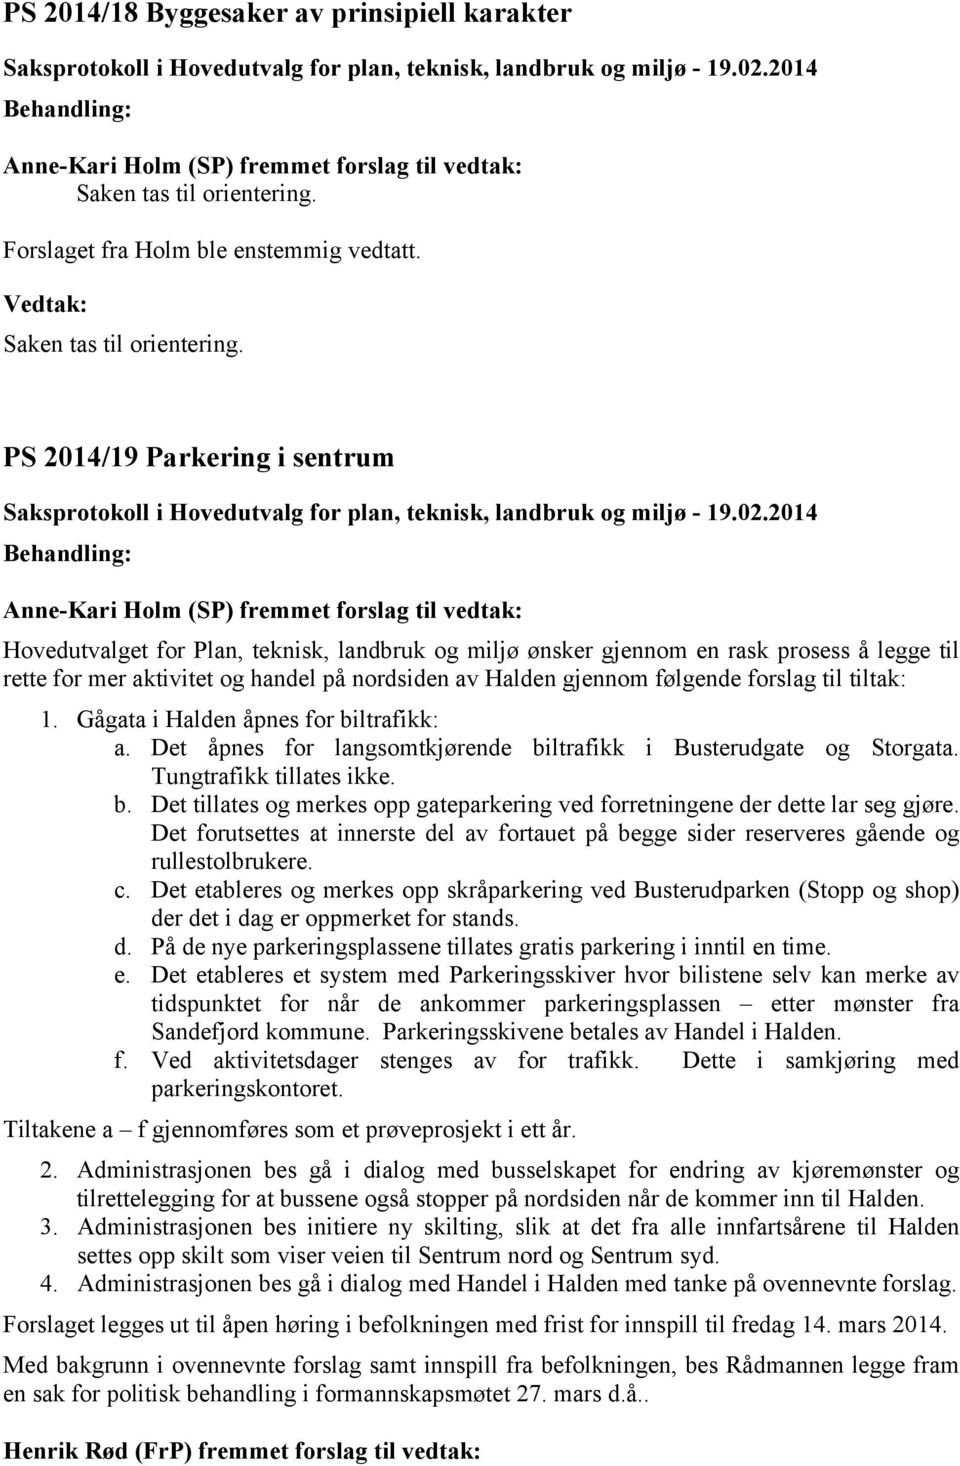 PS 2014/19 Parkering i sentrum Anne-Kari Holm (SP) fremmet forslag til vedtak: Hovedutvalget for Plan, teknisk, landbruk og miljø ønsker gjennom en rask prosess å legge til rette for mer aktivitet og